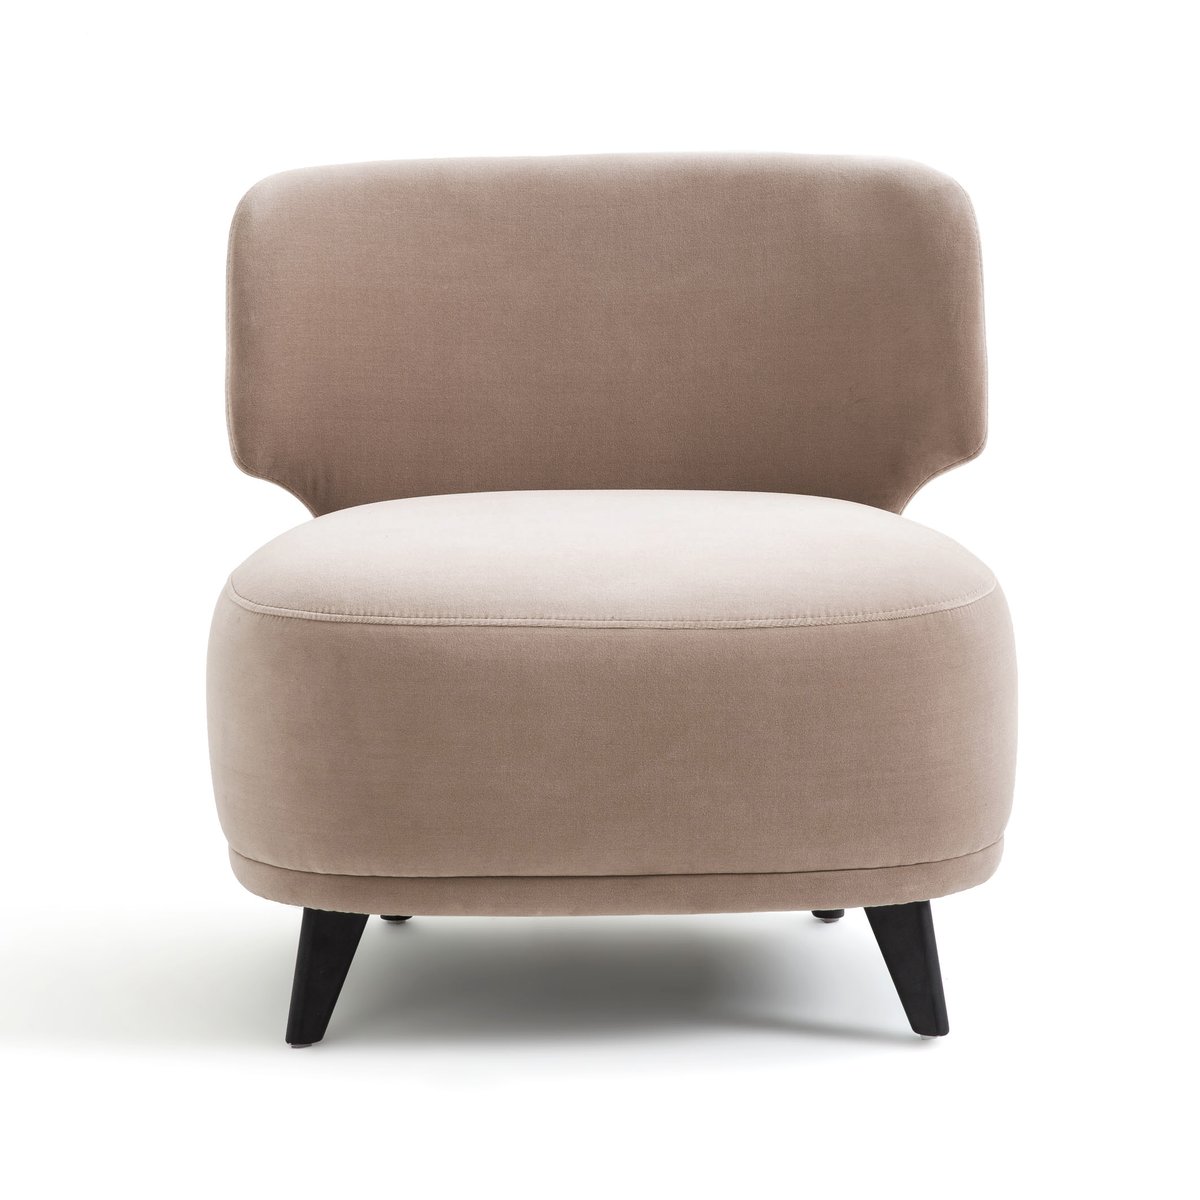 Кресло AM.PM Кресло Из велюра Odalie размер XL дизайн Э Галлины единый размер серый - фото 1